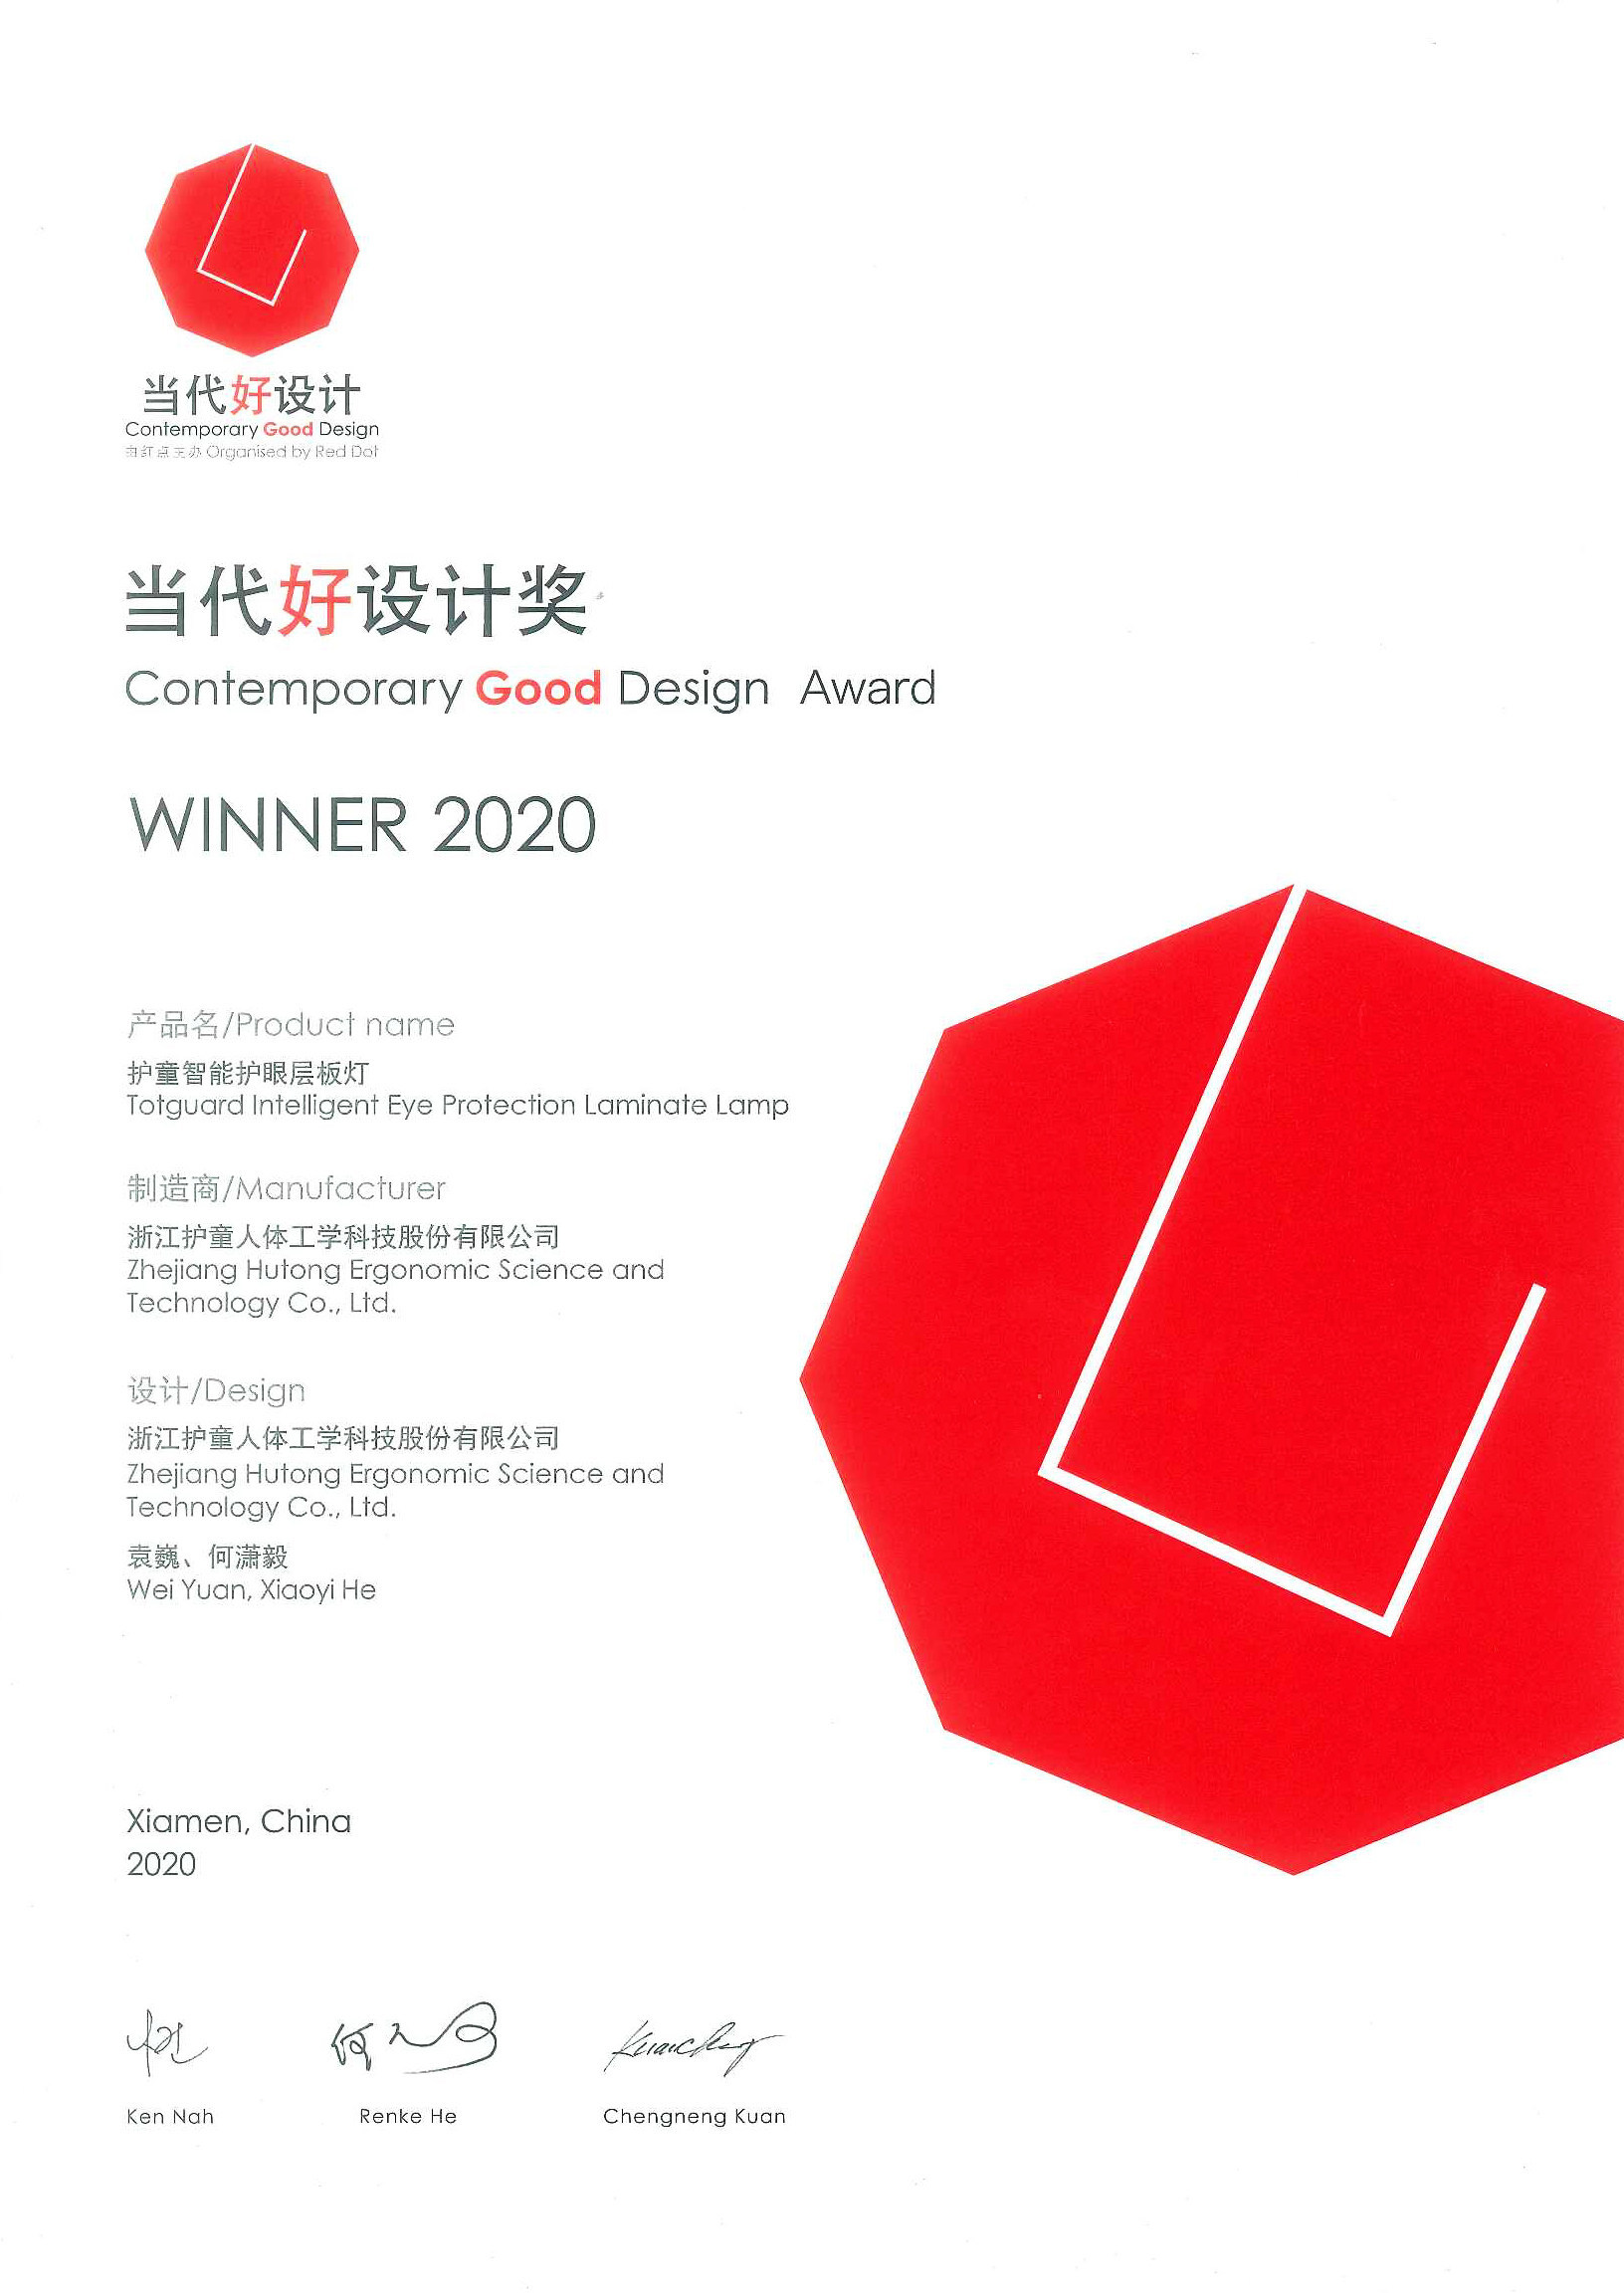 美通社 12月1日,由德国红点奖机构发起的2020当代好设计奖最终